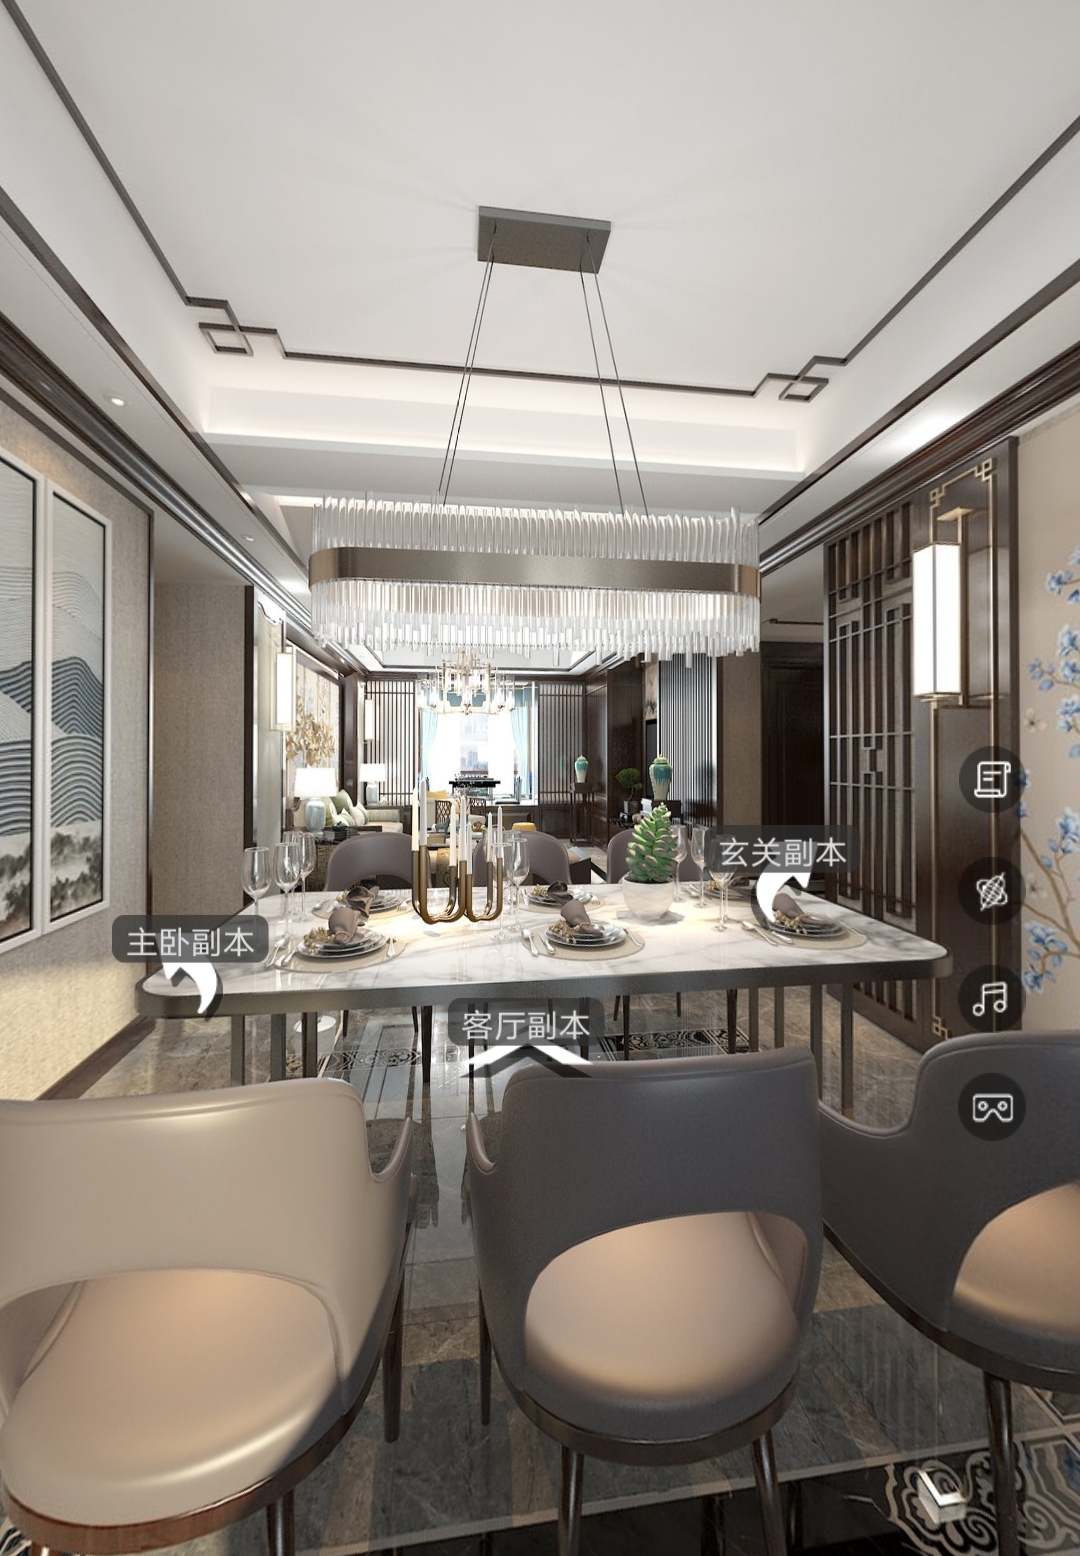 美式客餐厅 - 效果图交流区-建E室内设计网